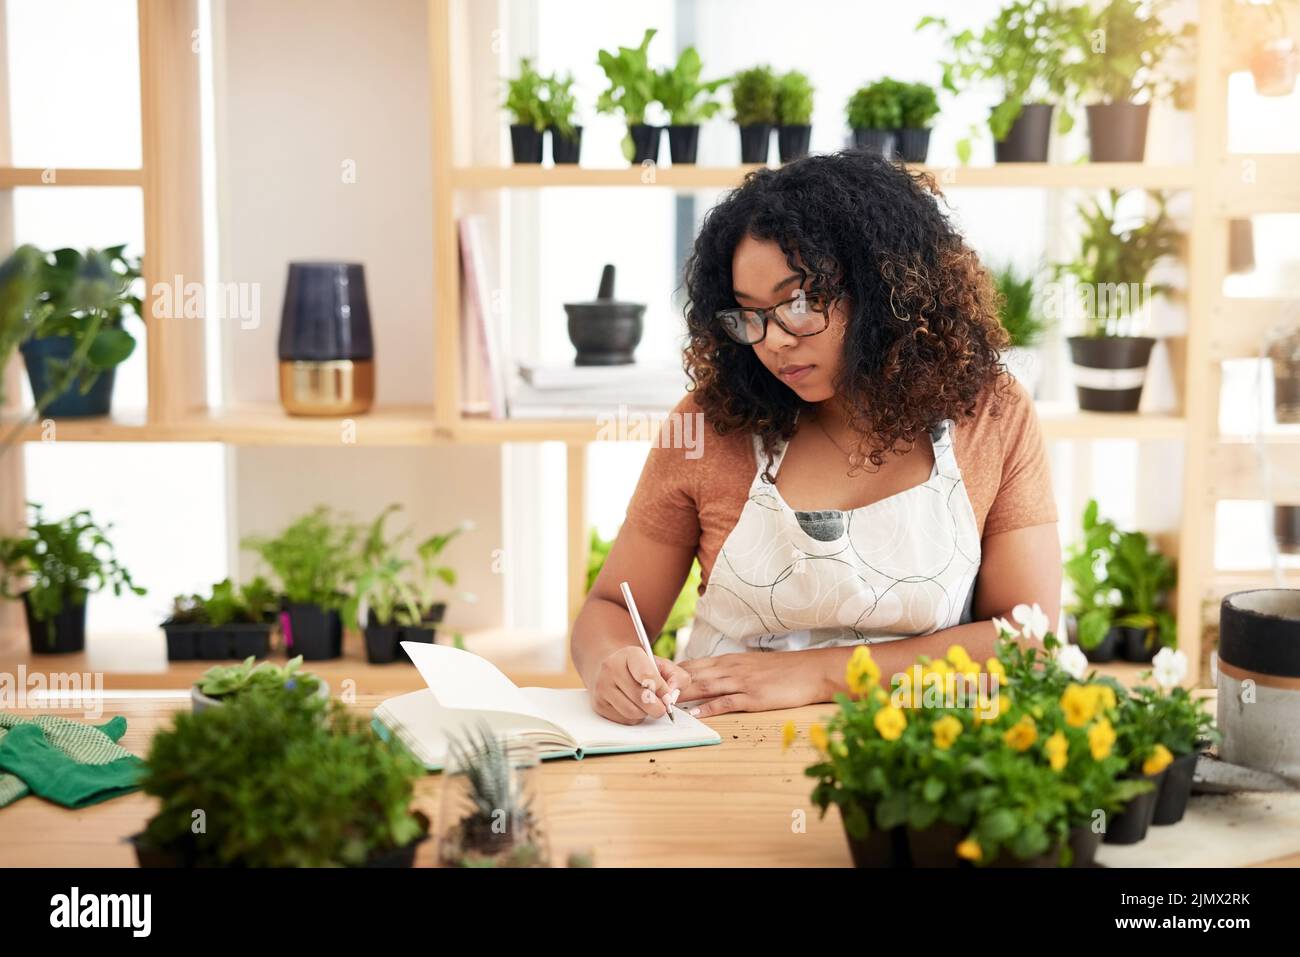 Prende sul serio la botanica, una giovane e attraente botanista femminile che prende appunti mentre lavora nel suo fiorista. Foto Stock